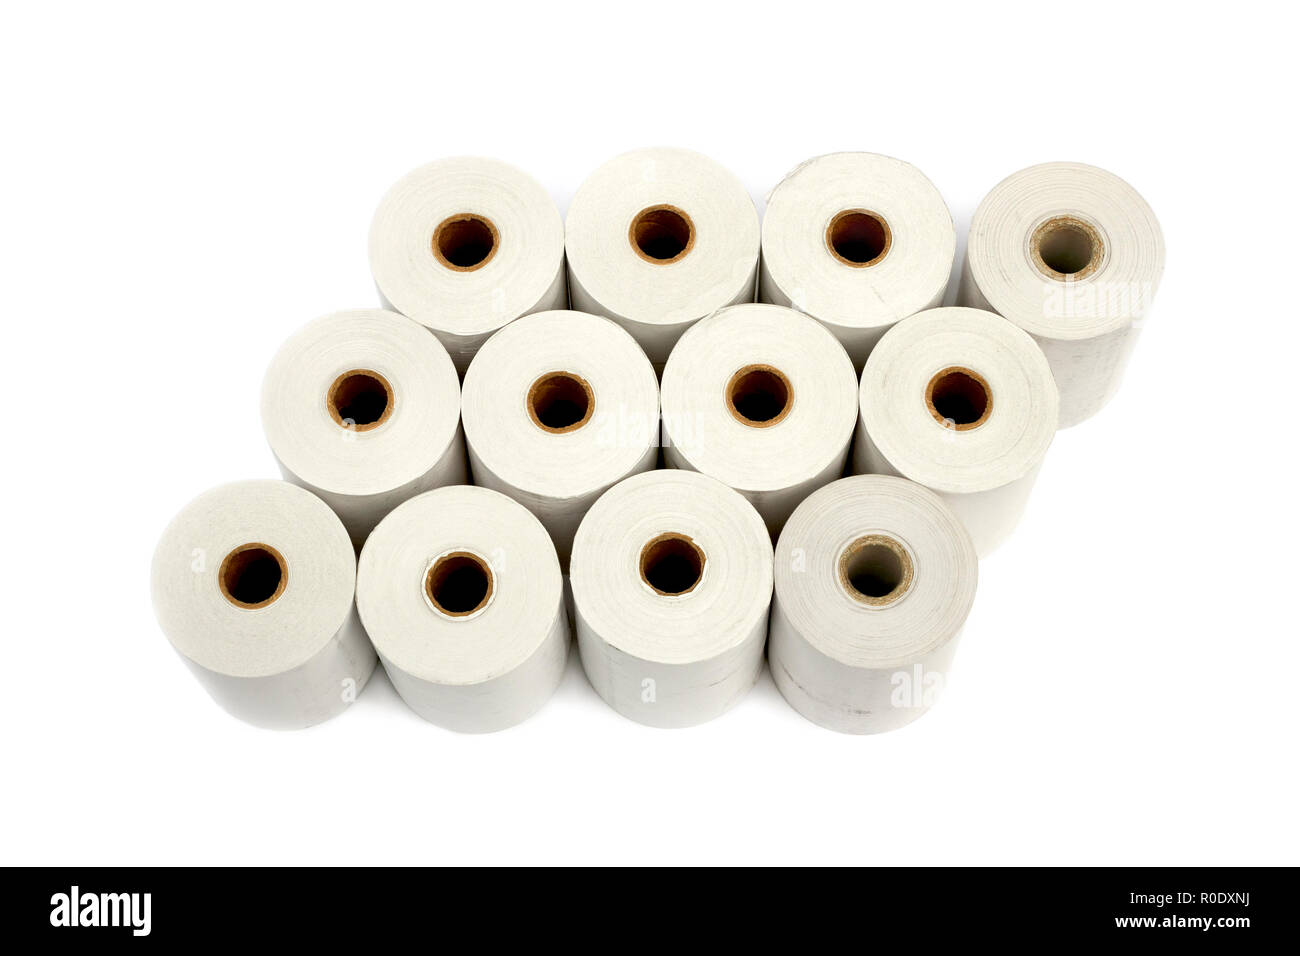 Gruppo di rotoli di carta termica per stampanti e registratori di cassa isolate su sfondo bianco Foto Stock